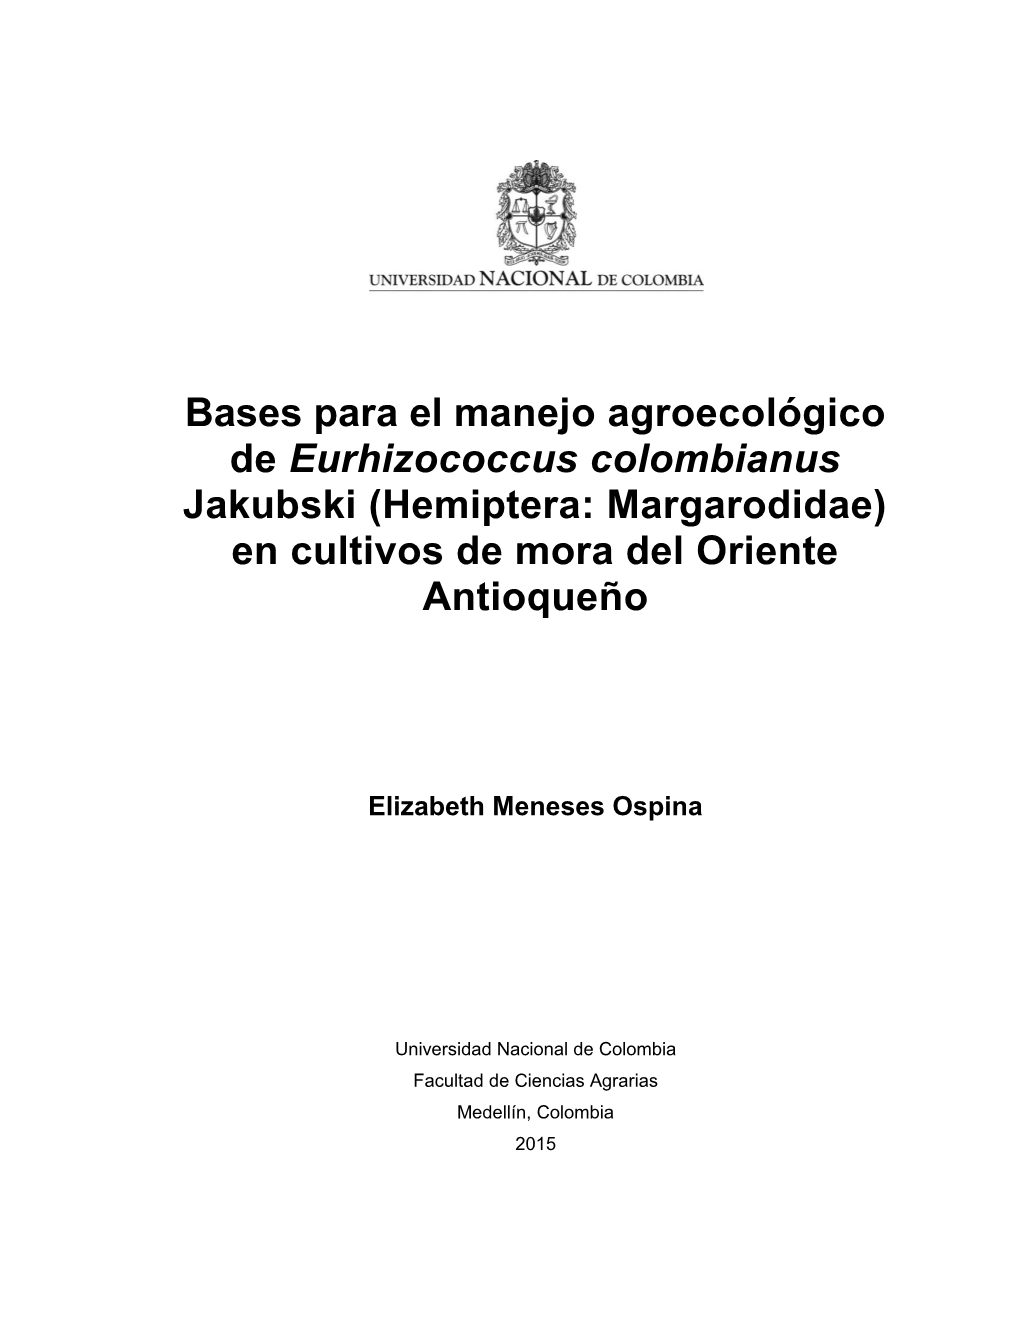 Bases Para El Manejo Agroecológico De Eurhizococcus Colombianus Jakubski (Hemiptera: Margarodidae) En Cultivos De Mora Del Oriente Antioqueño